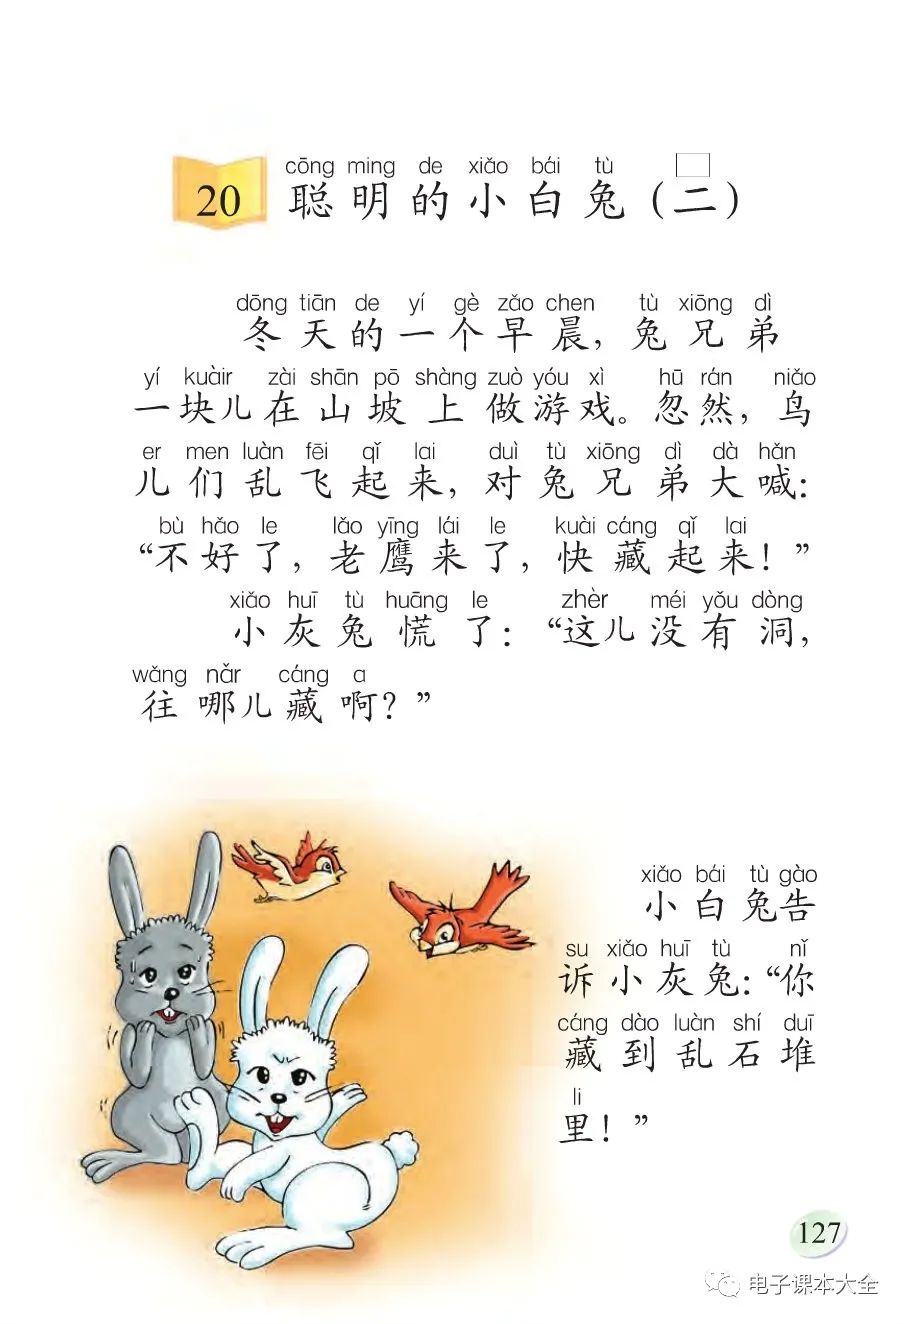 20 聪明的小白兔（二）(Page127) 语文版一年级语文上册(S版)电子课本 